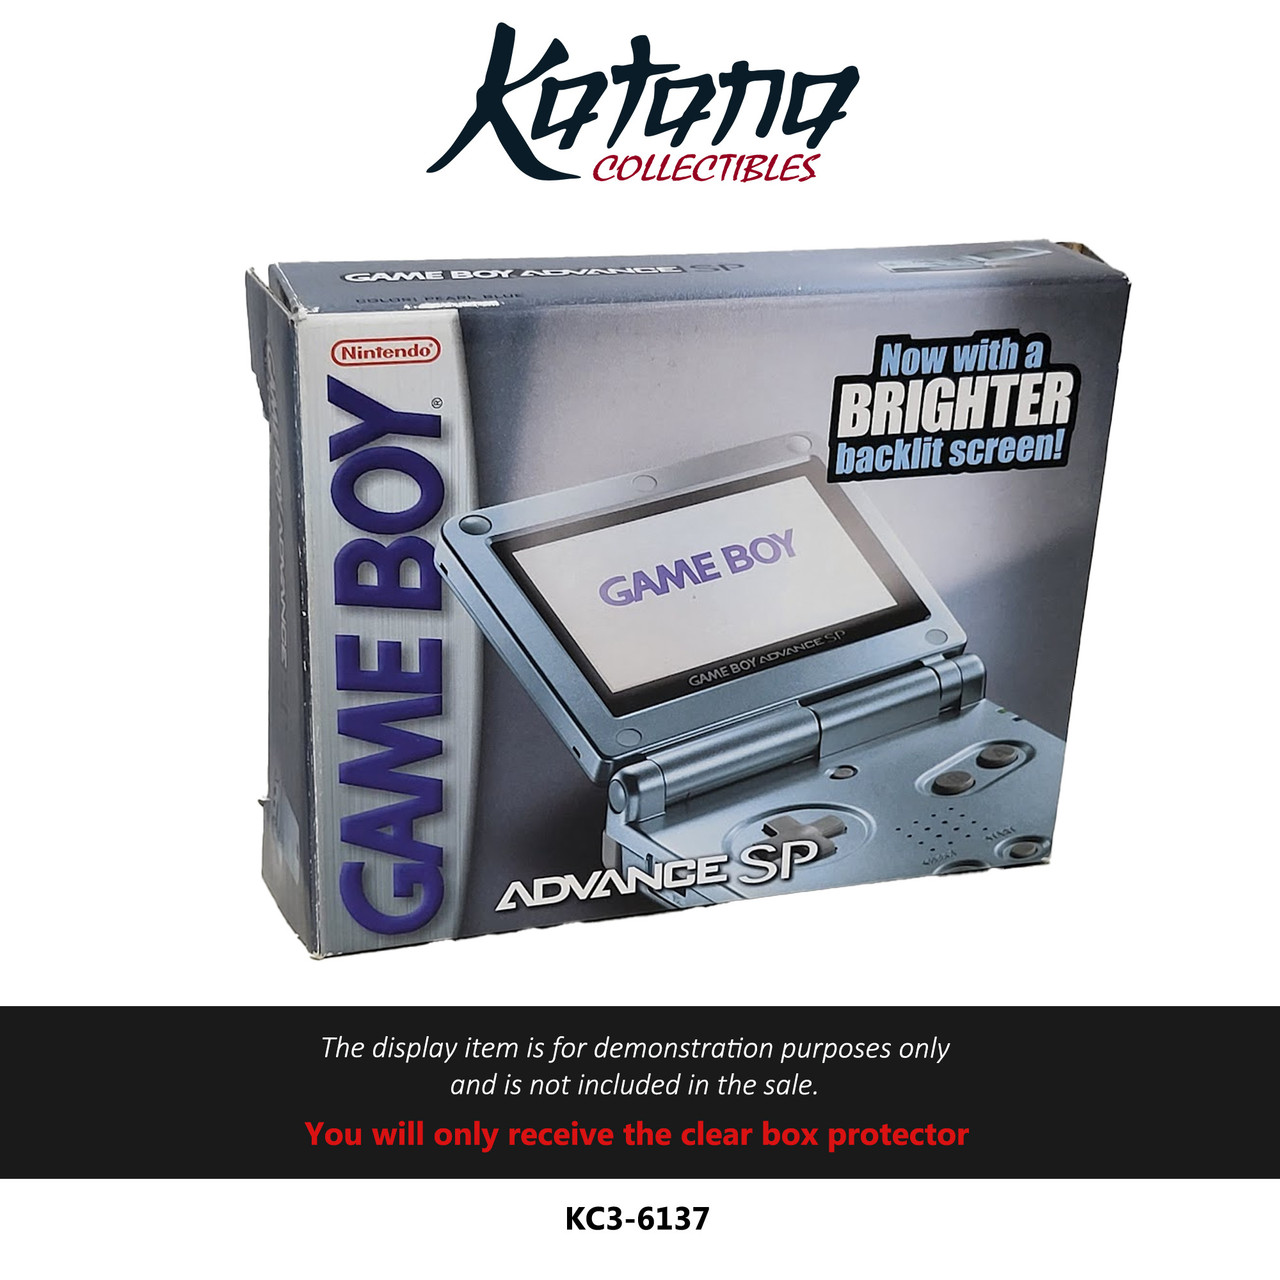 Katana Collectibles Protector For Nintendo Gameboy Advance SP Brighter Screen